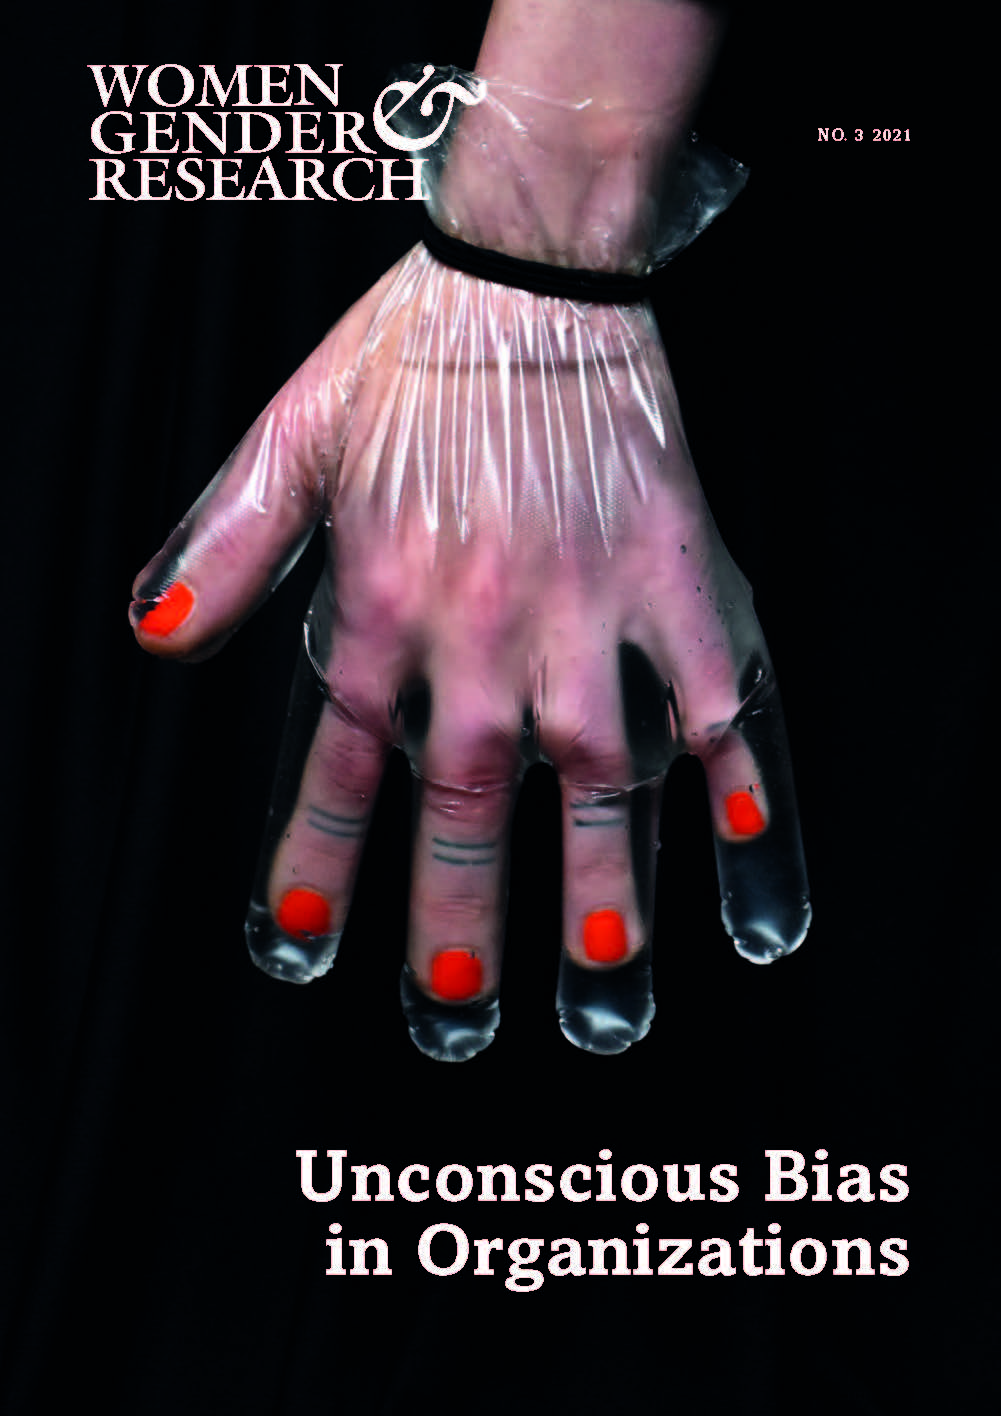 Unconscious bias in organizations